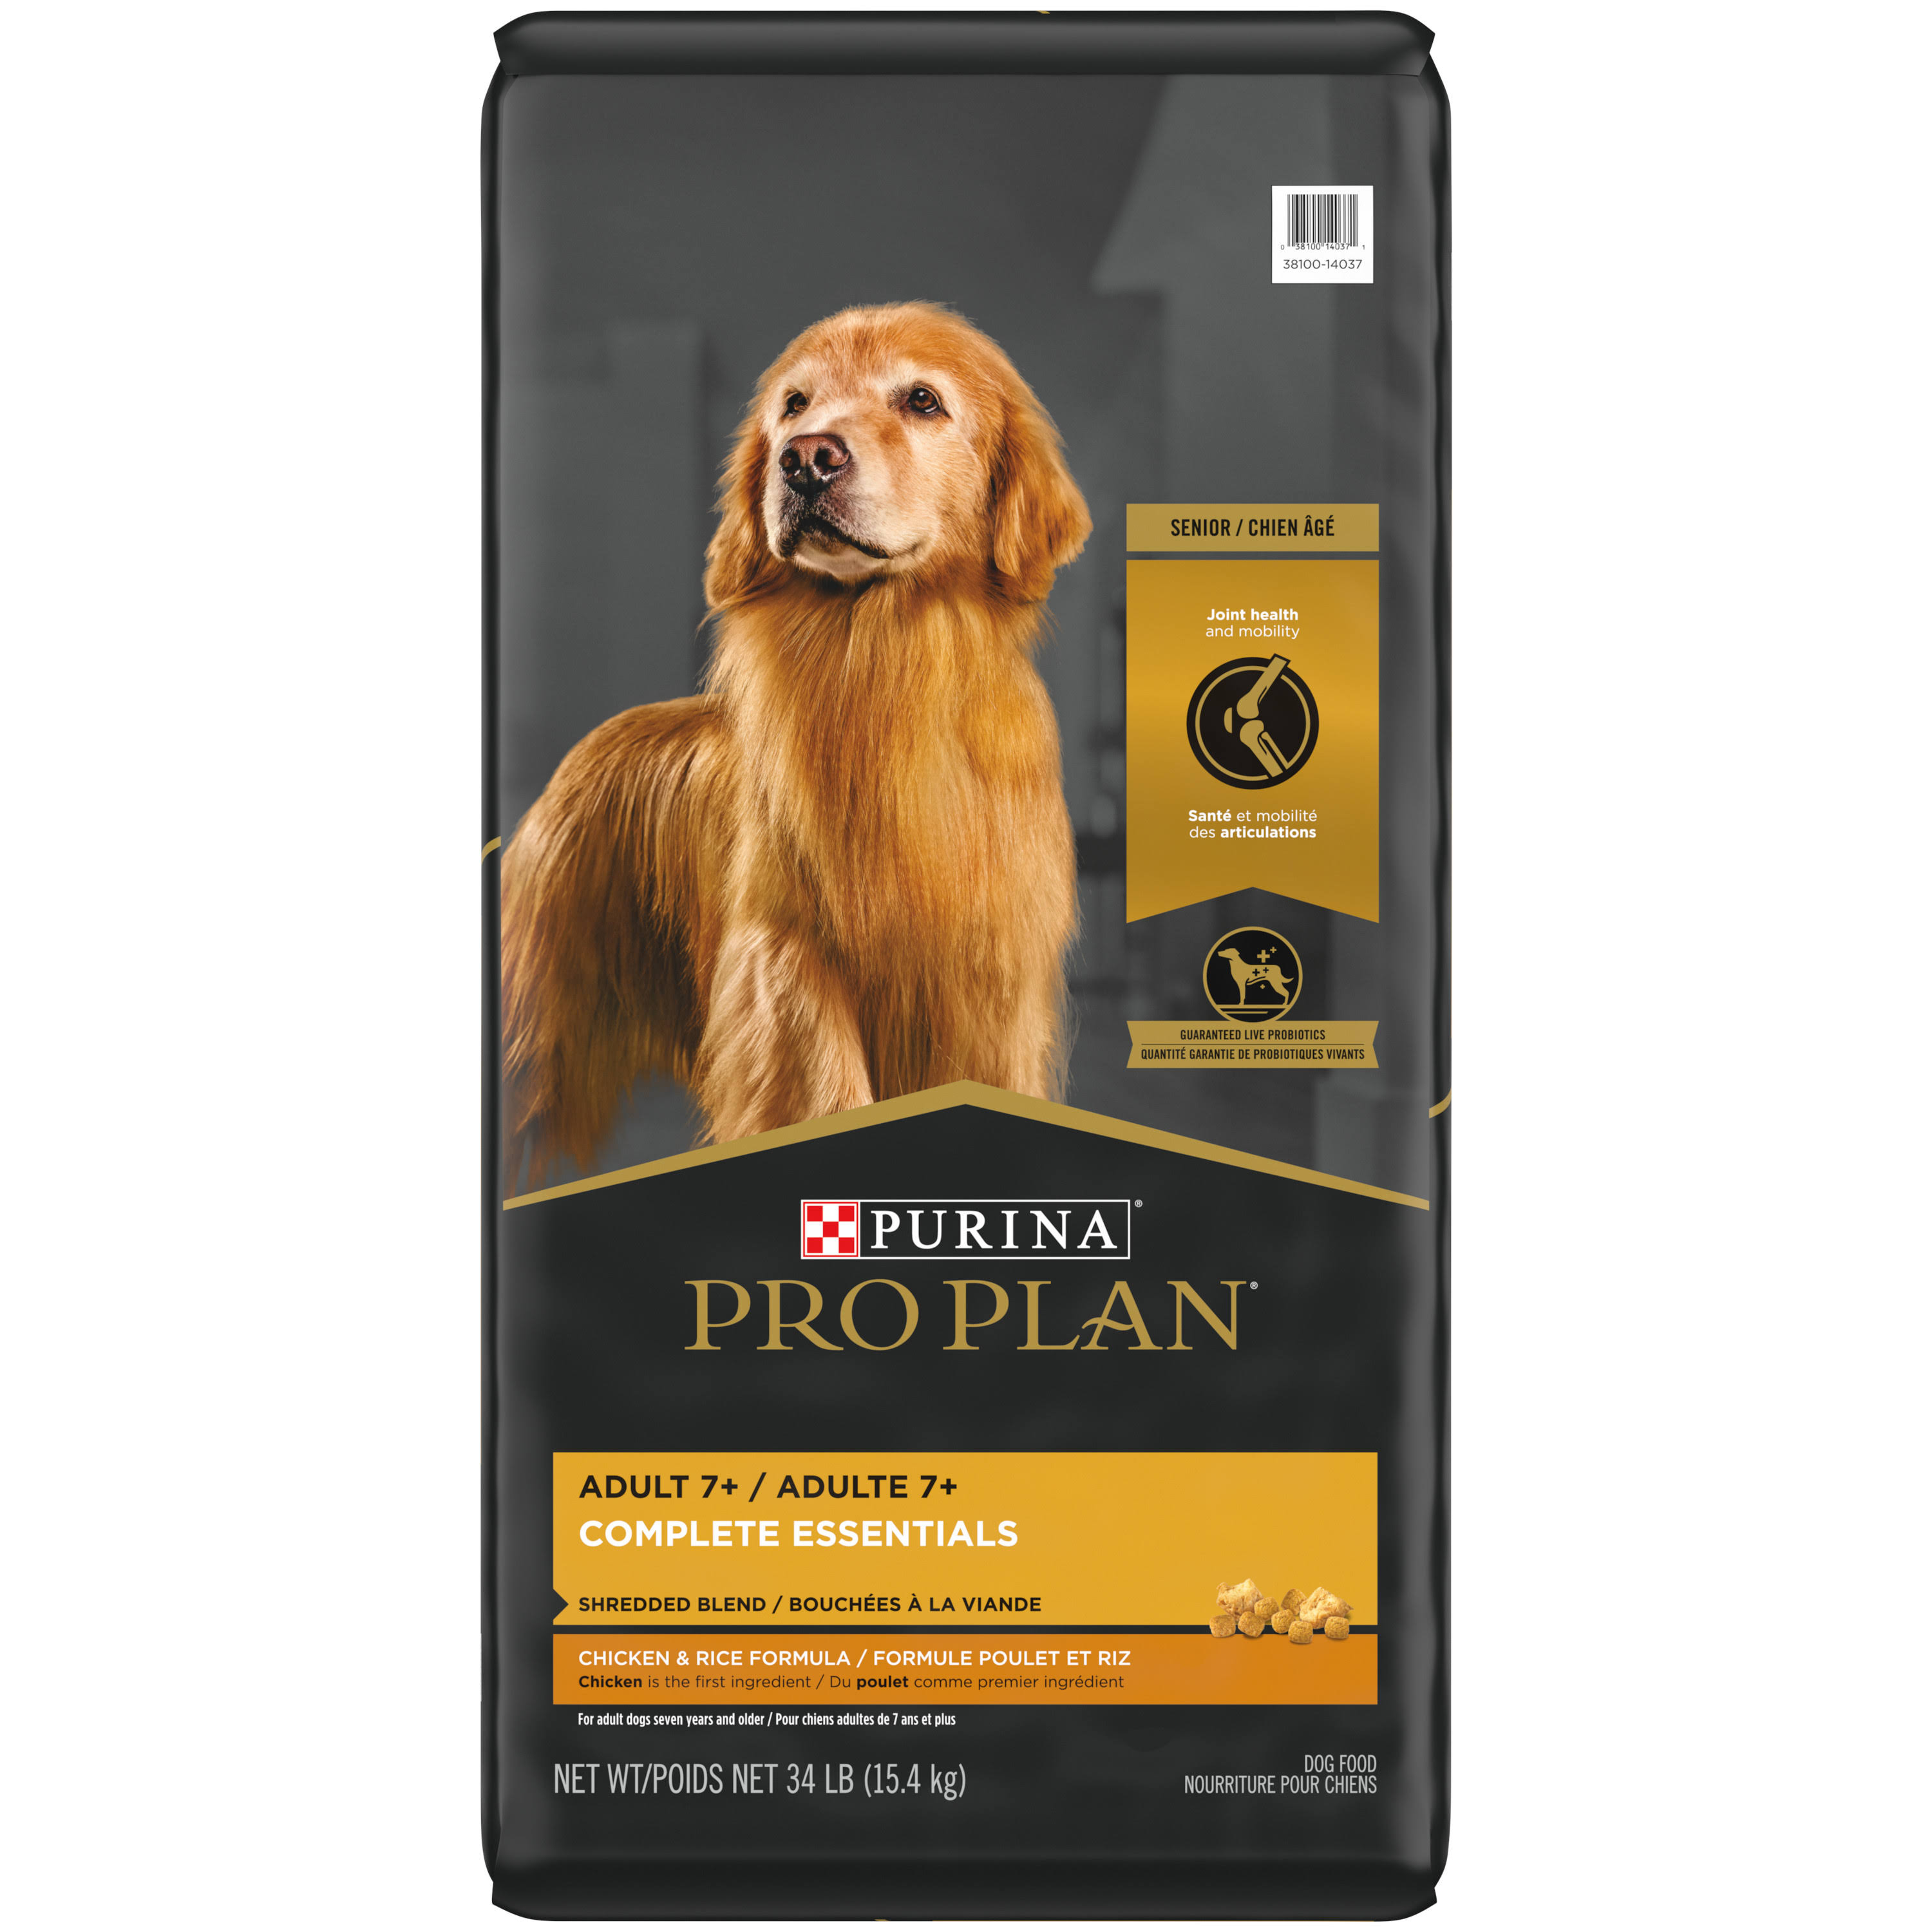 Purina Pro Plan Savor Dry Adult Dog Food - Shredded Blend Chicken & Rice Formula, 34lb